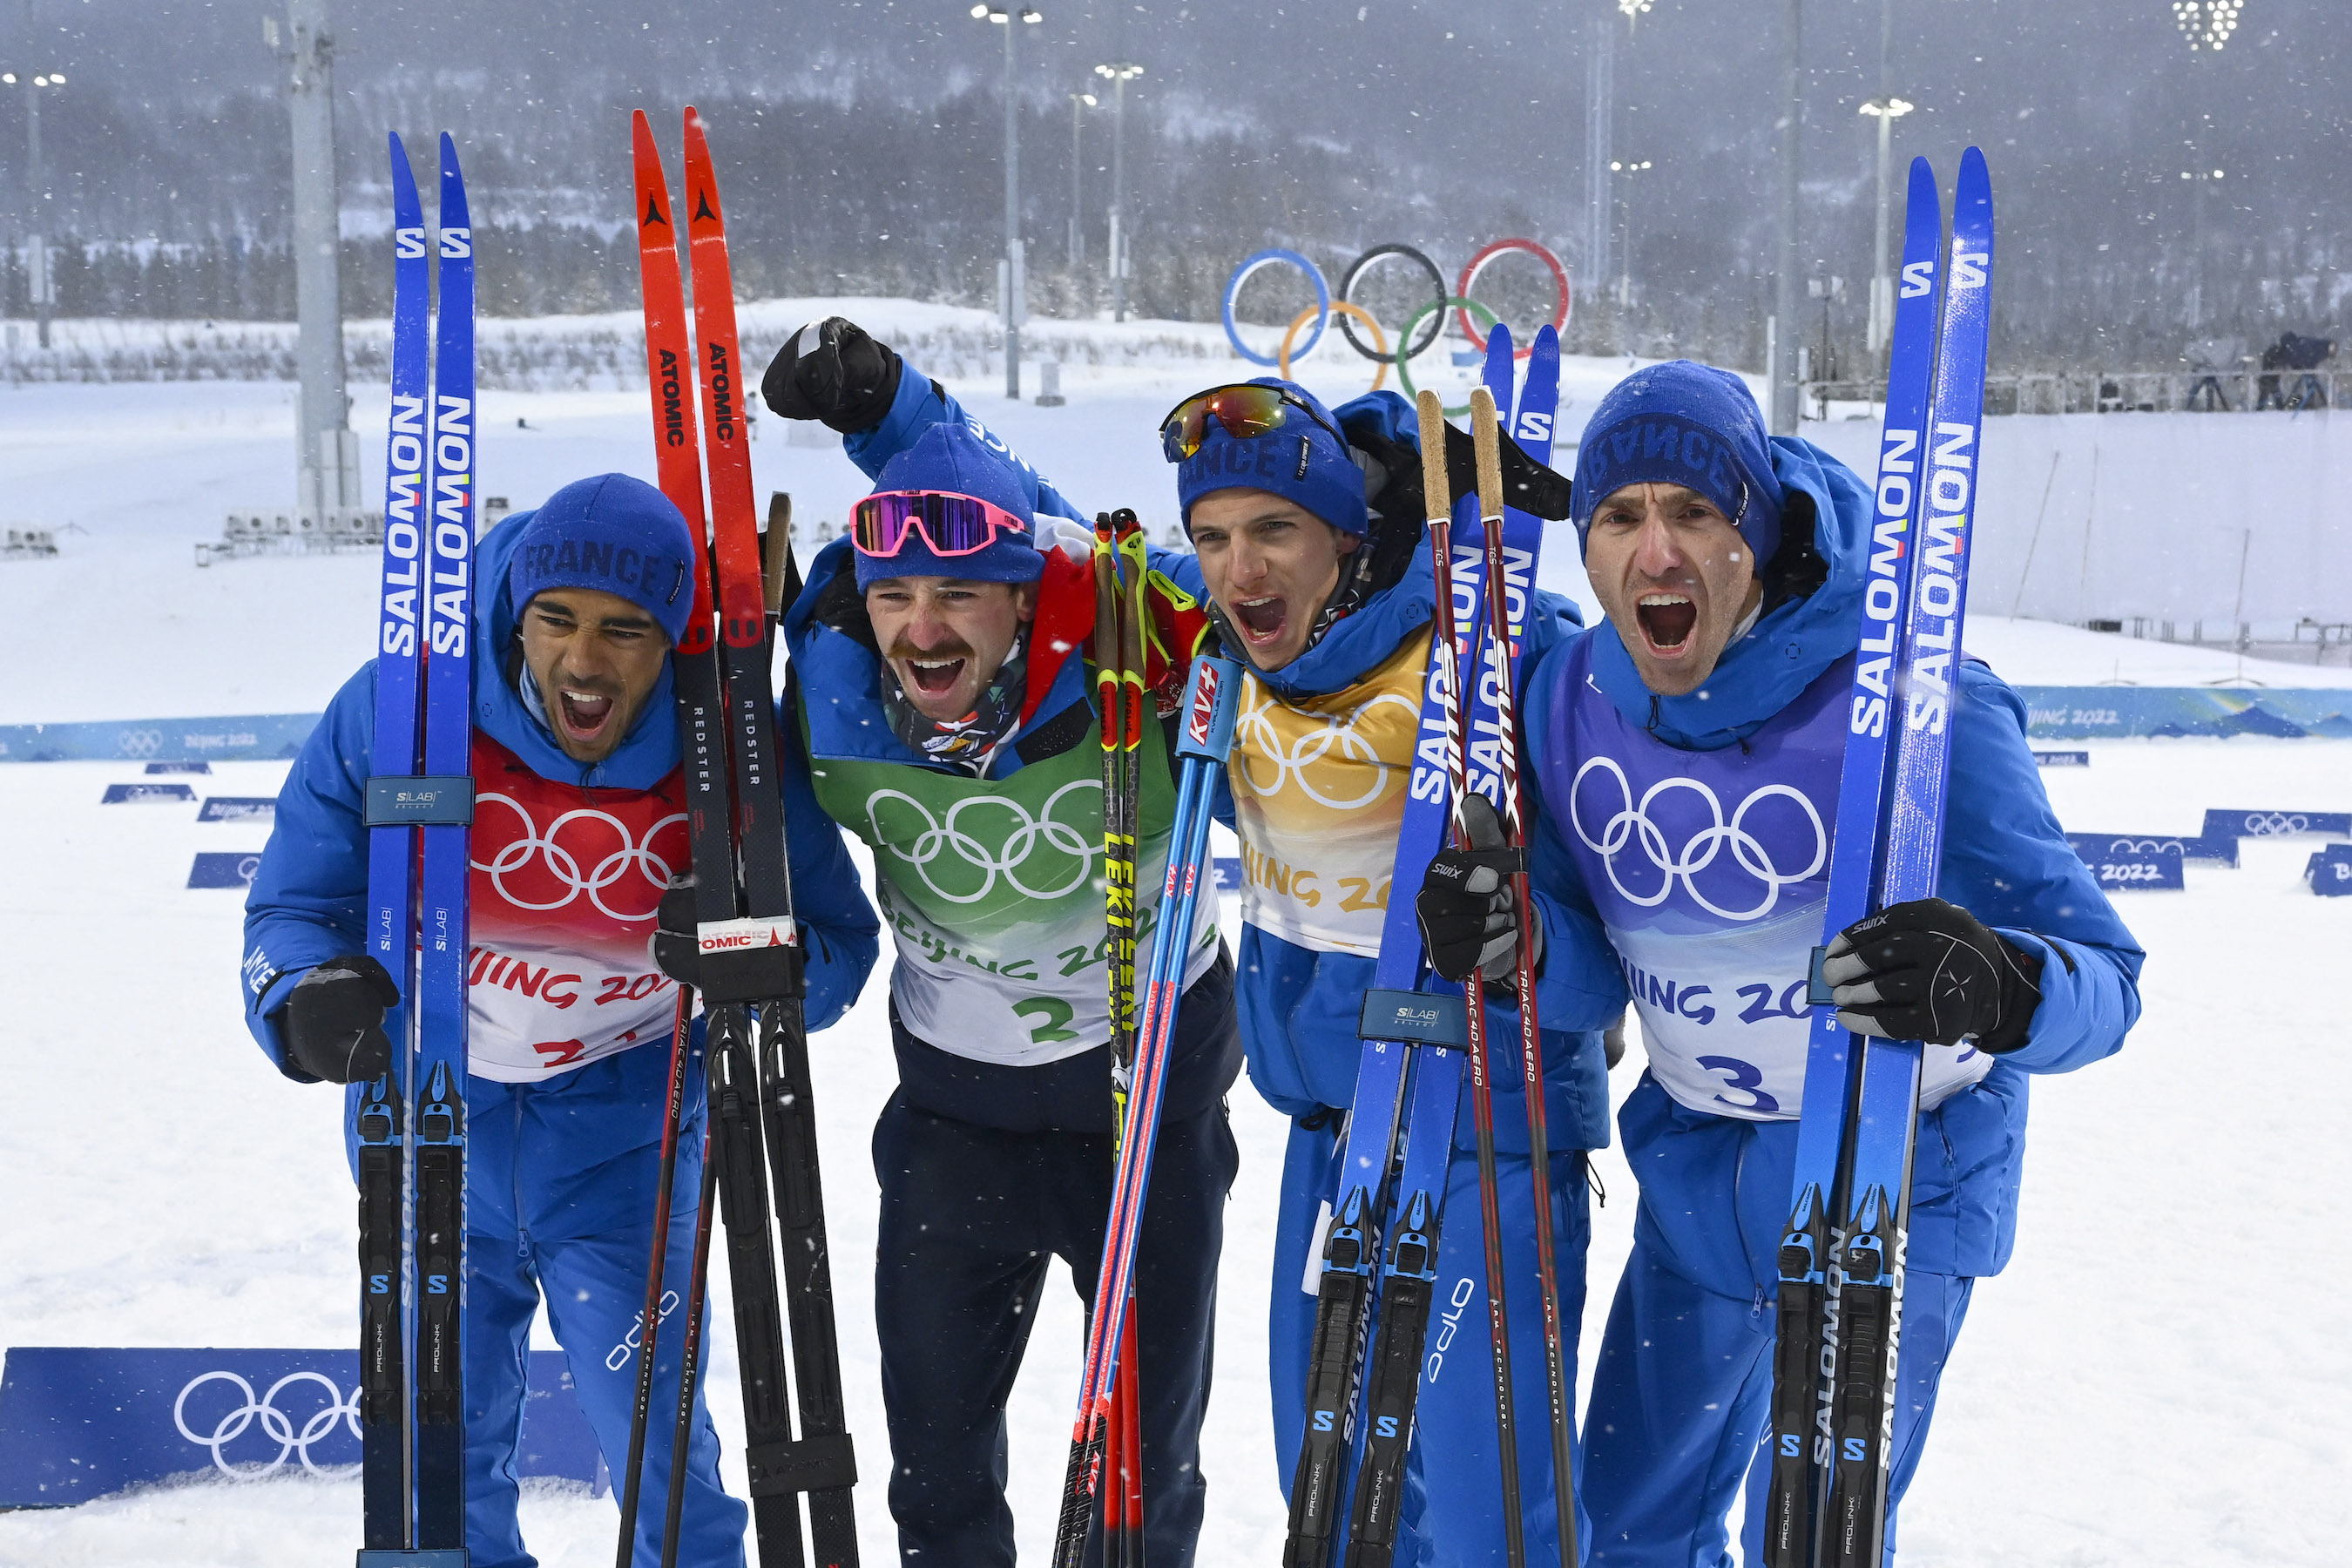 Richard Jouve, Hugo Lapalus, Clément Parisse et Maurice Manificat ski de fond